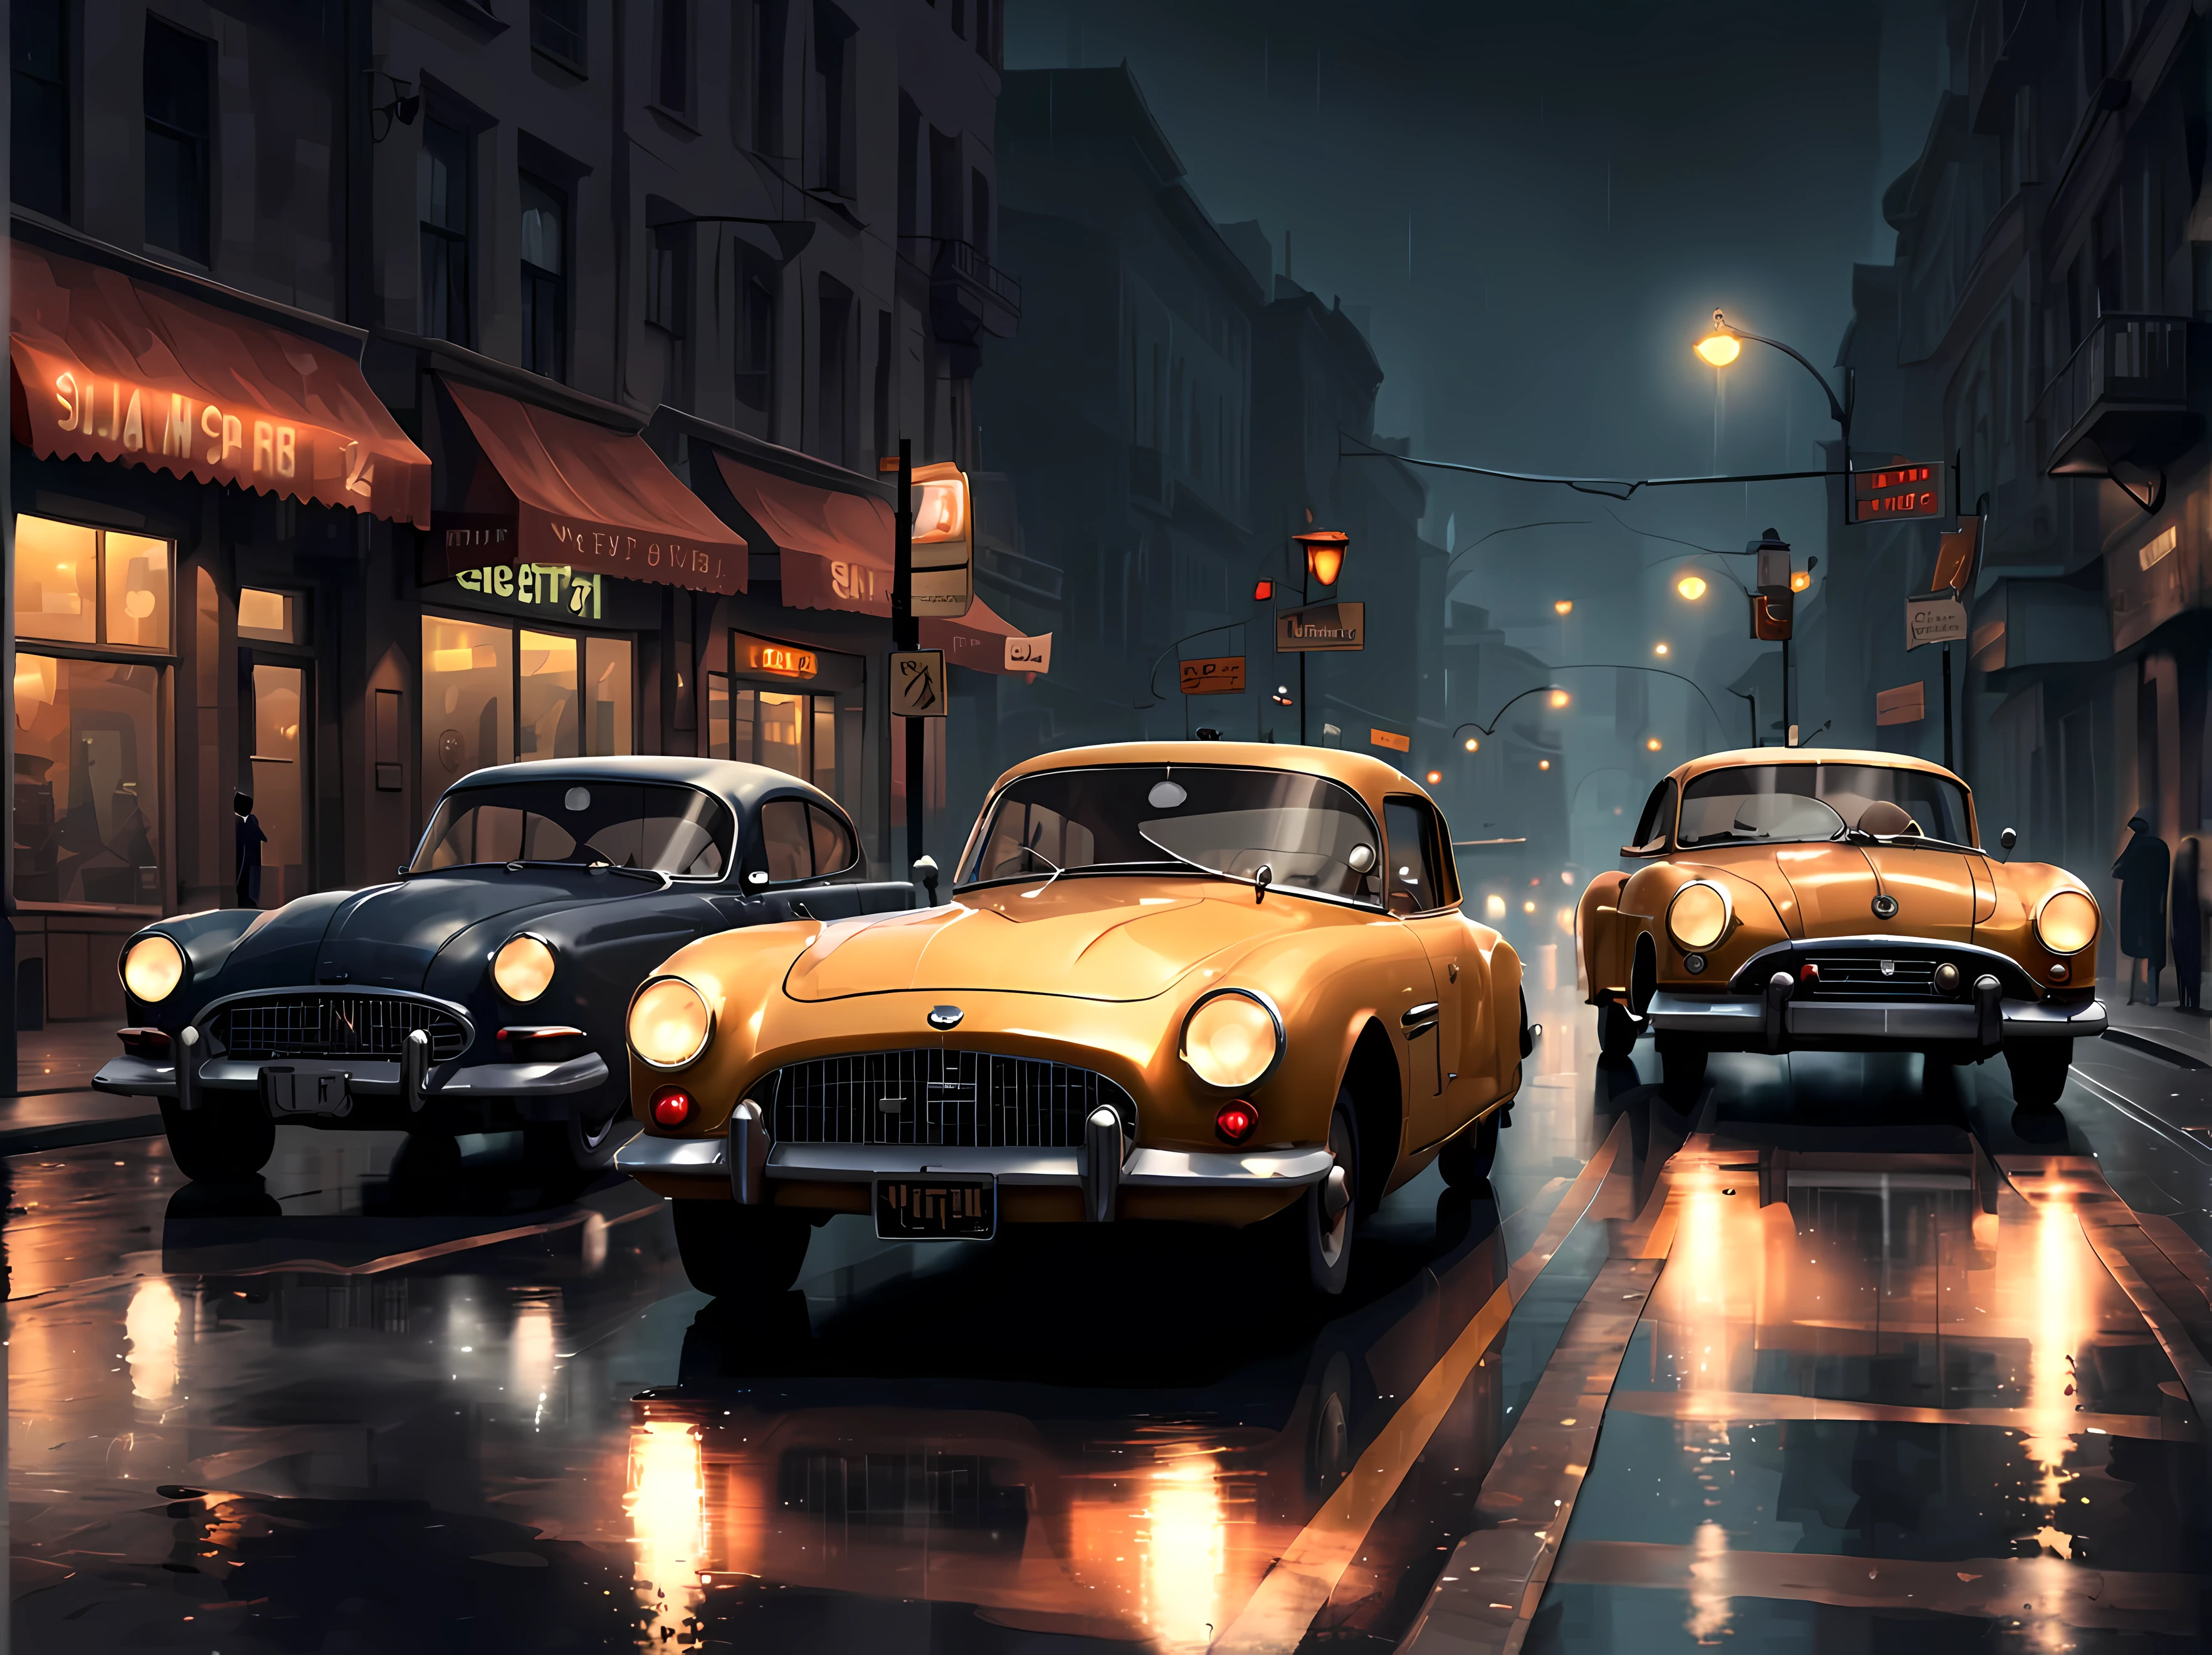 (style de pixels:1.4), Chef-d&#39;œuvre en résolution maximale de 16K, concevoir une voiture captivante et passionnante ((chasse)) entre deux ((ancien)) voitures ((courbes élégantes, conception classique)) dans le style atmosphérique du film noir, la scène se déroule dans des rues détrempées par la pluie, éclairées par la lueur crue des réverbères, capturer la tension et l&#39;adrénaline d&#39;une poursuite à grande vitesse. | Un environnement urbain sombre et ombragé, reflets scintillants sur le trottoir mouillé. | ((Plus_détail))